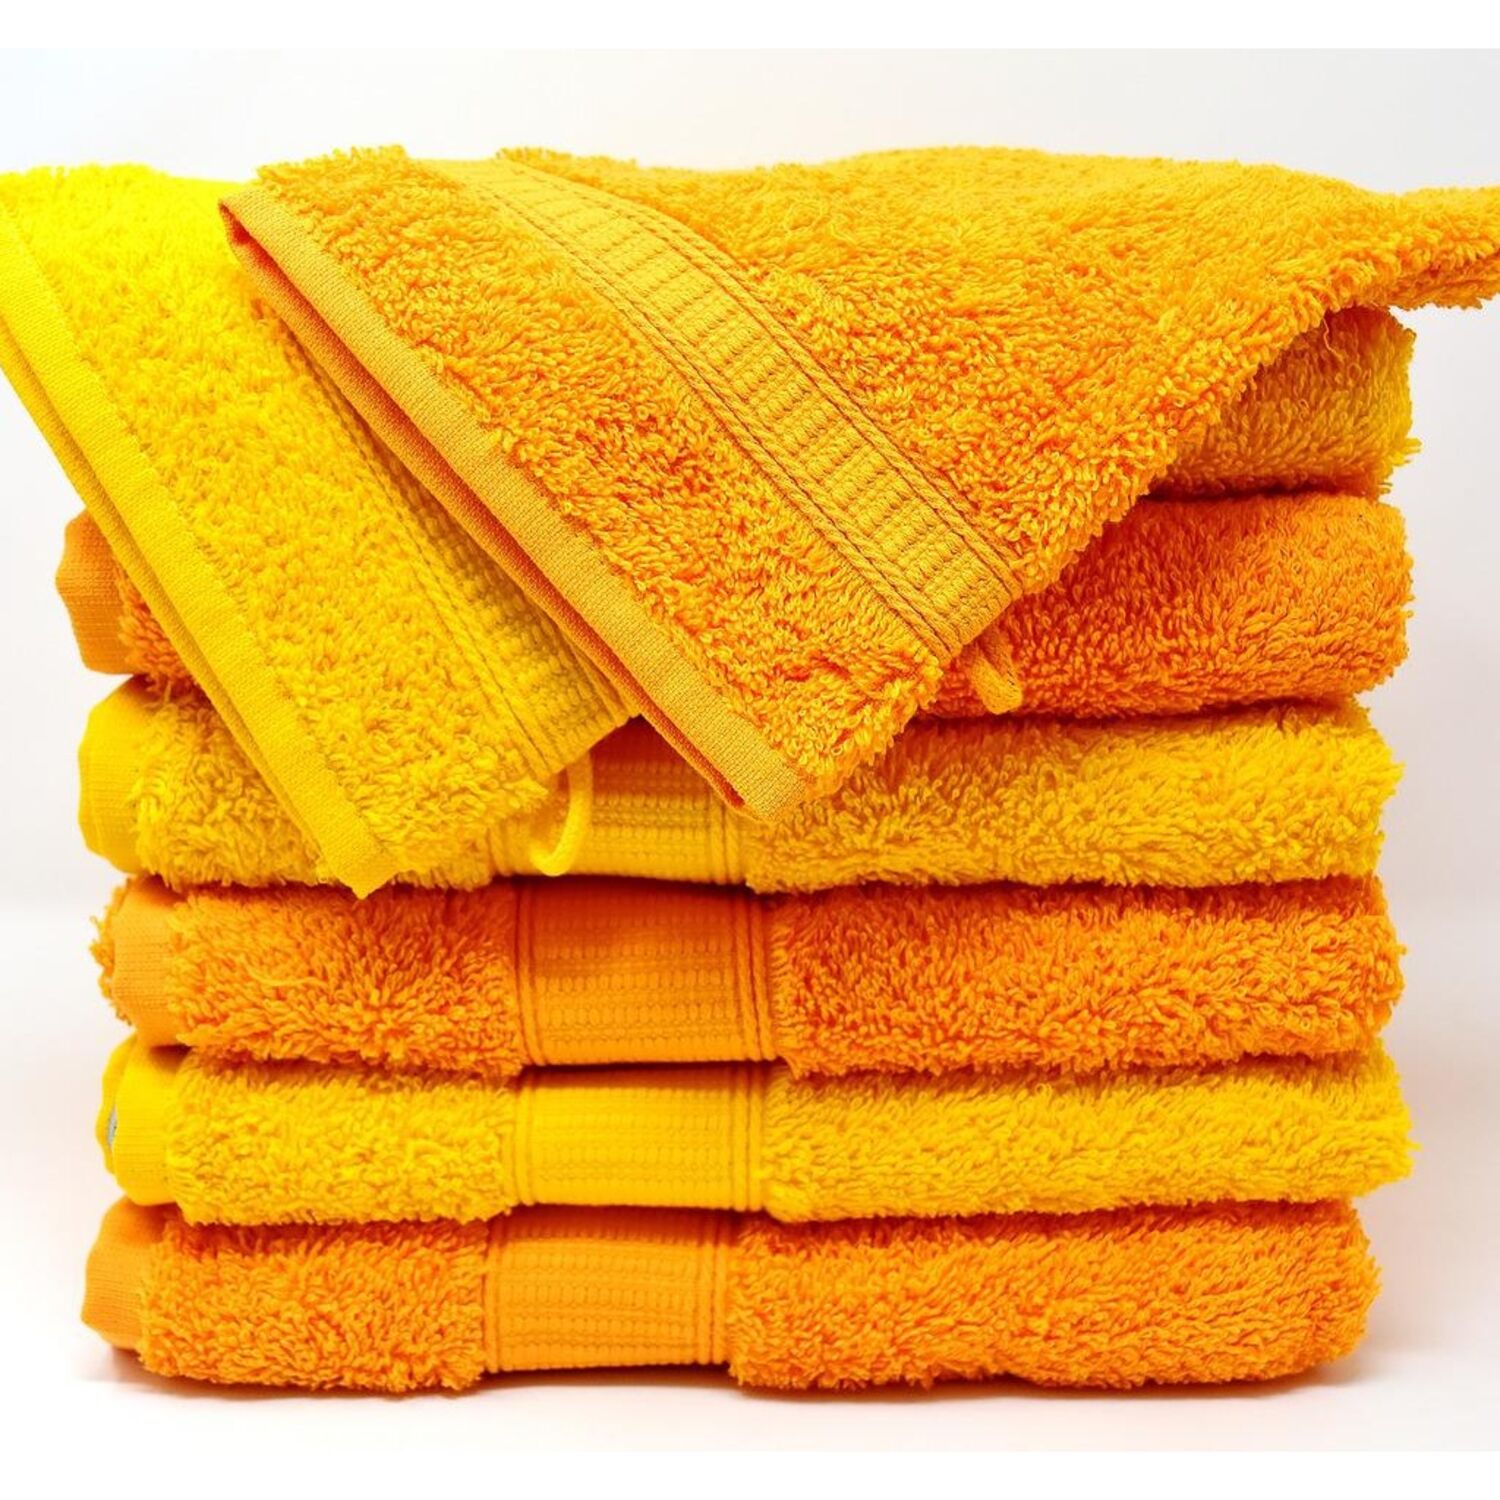 Pourquoi les serviettes en coton durcissent-elles en séchant ?